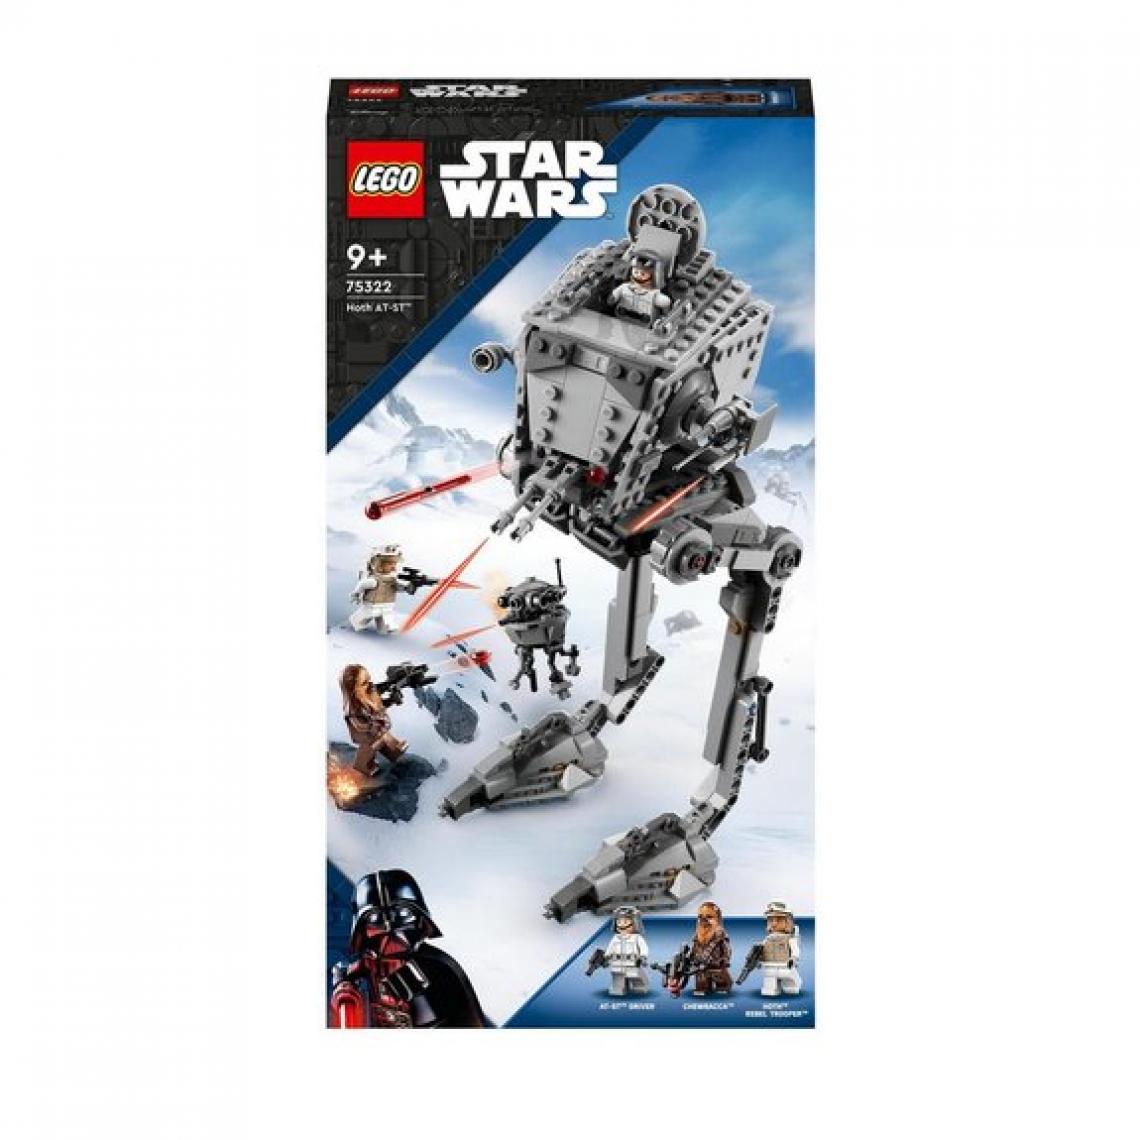 Ludendo - AT-ST™ de Hoth™ LEGO Star Wars 75322 - Briques et blocs